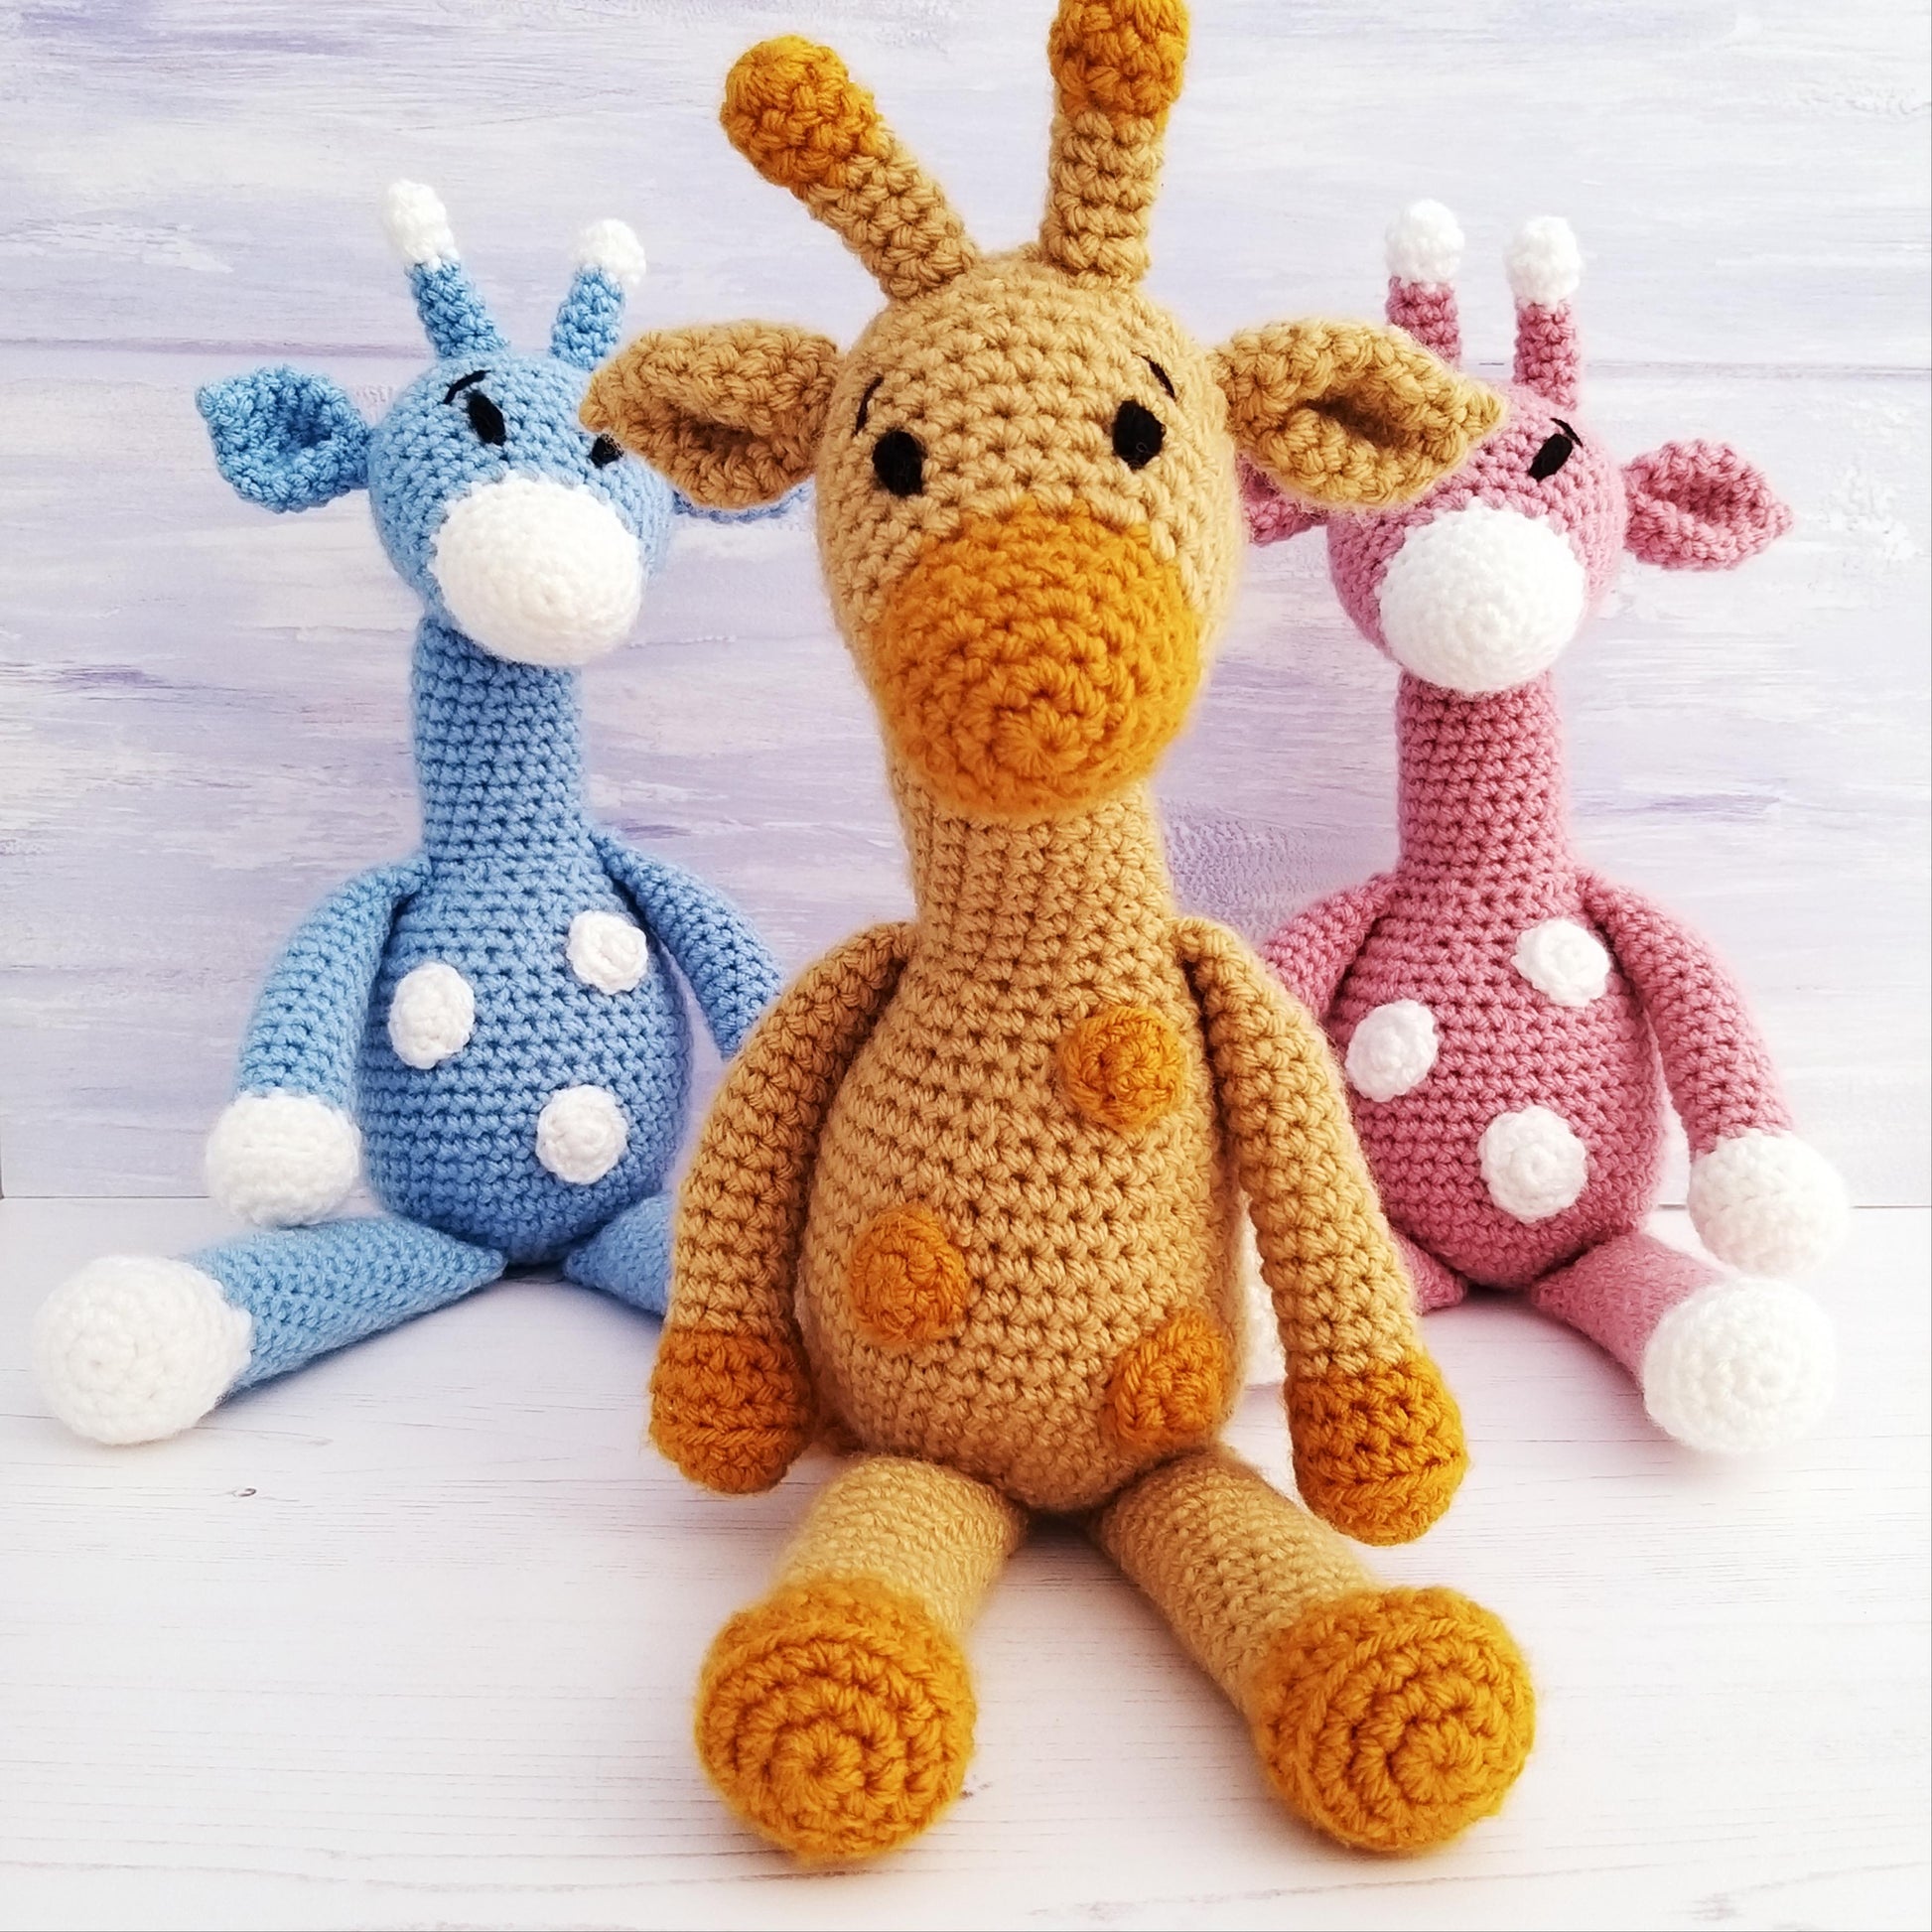 Toy Crochet Giraffe Kits for Beginners